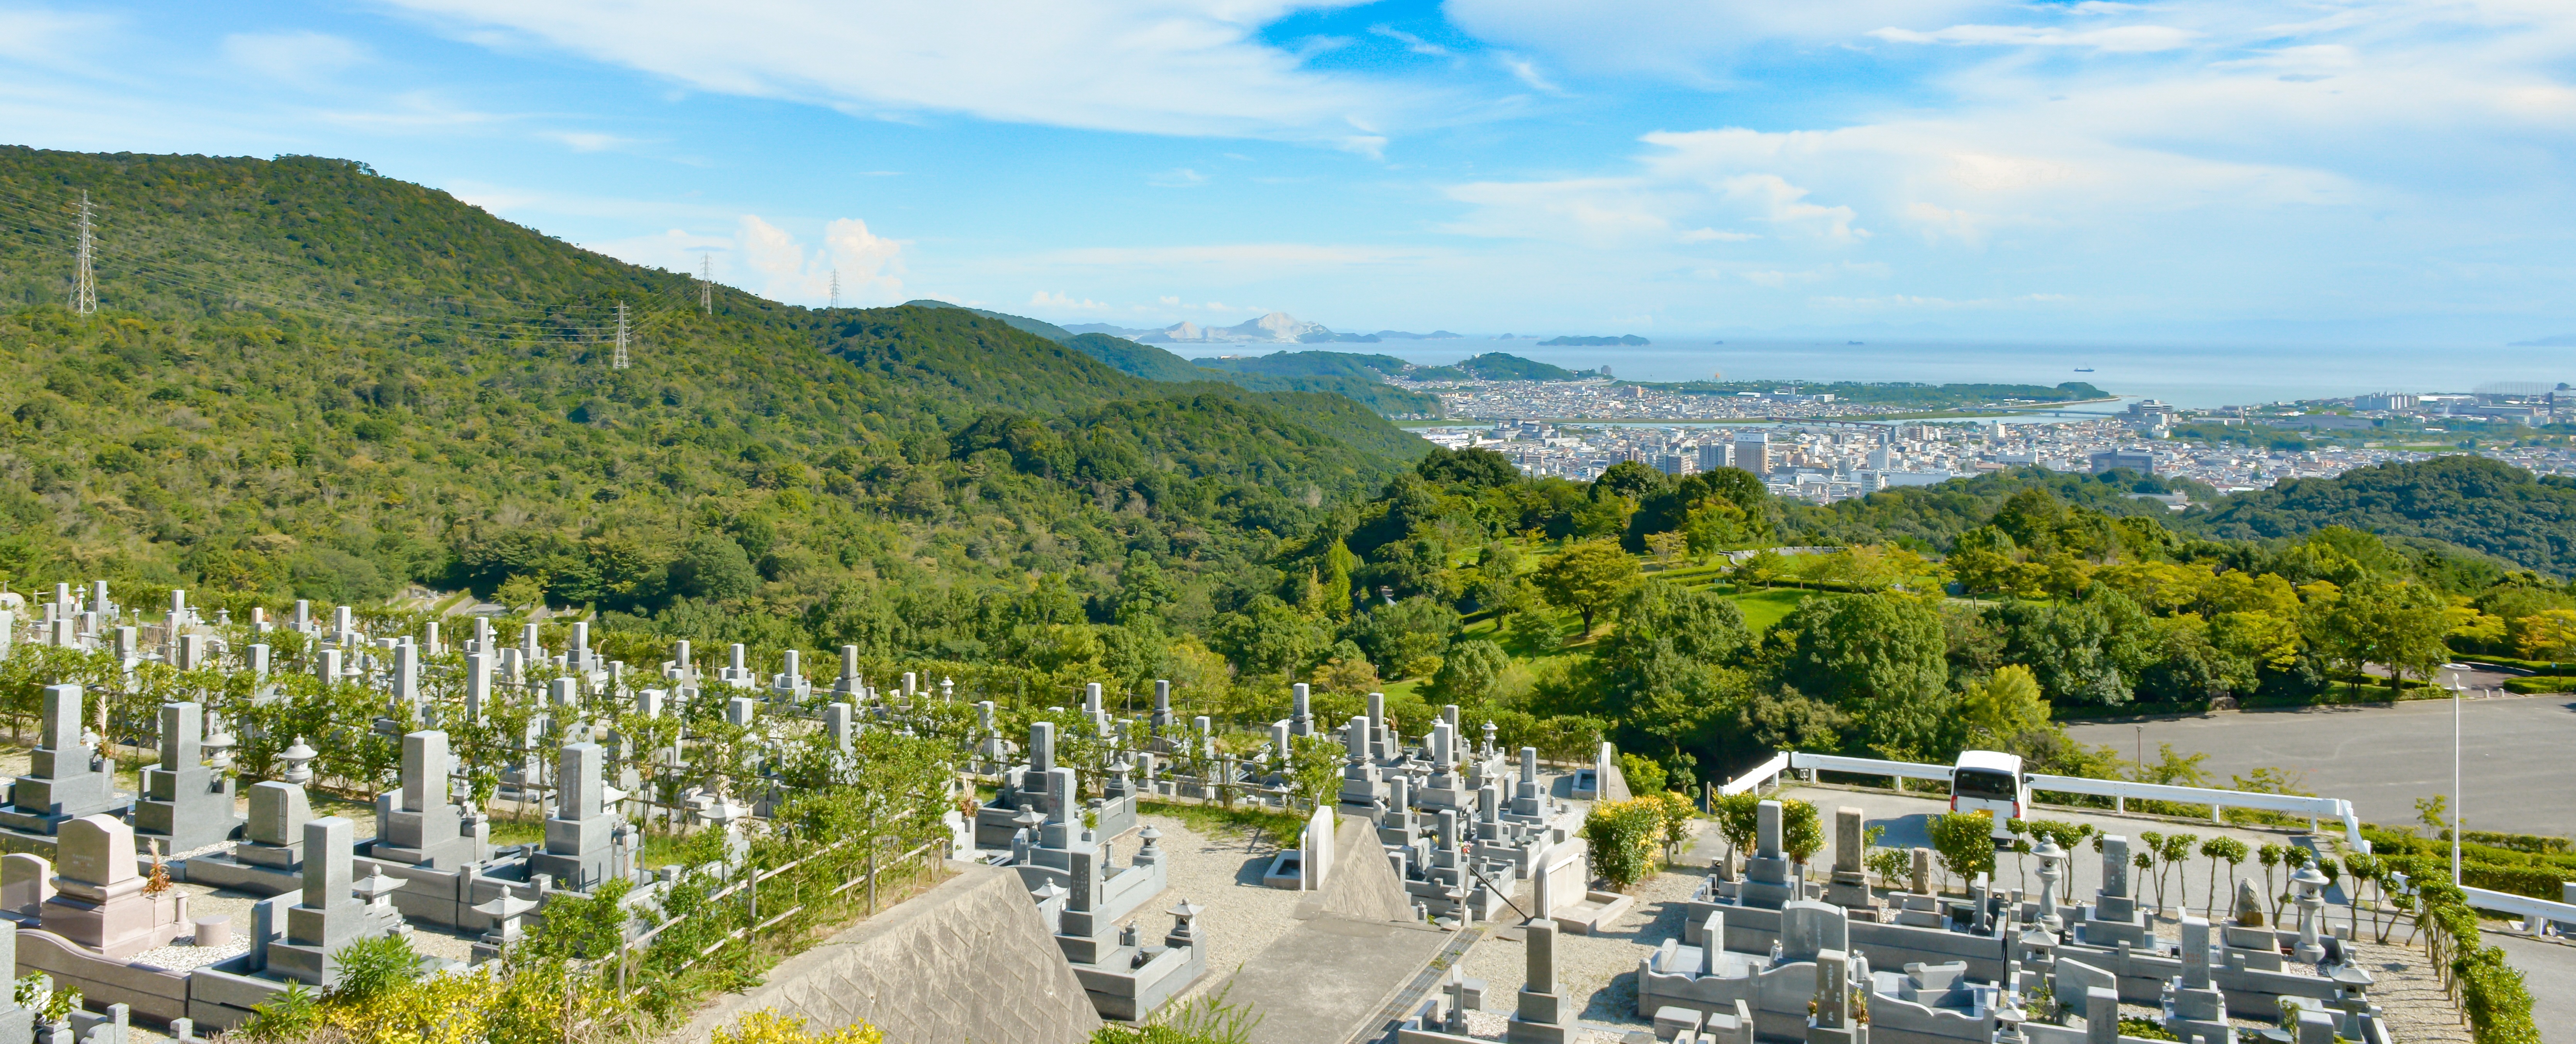 高山墓園の写真